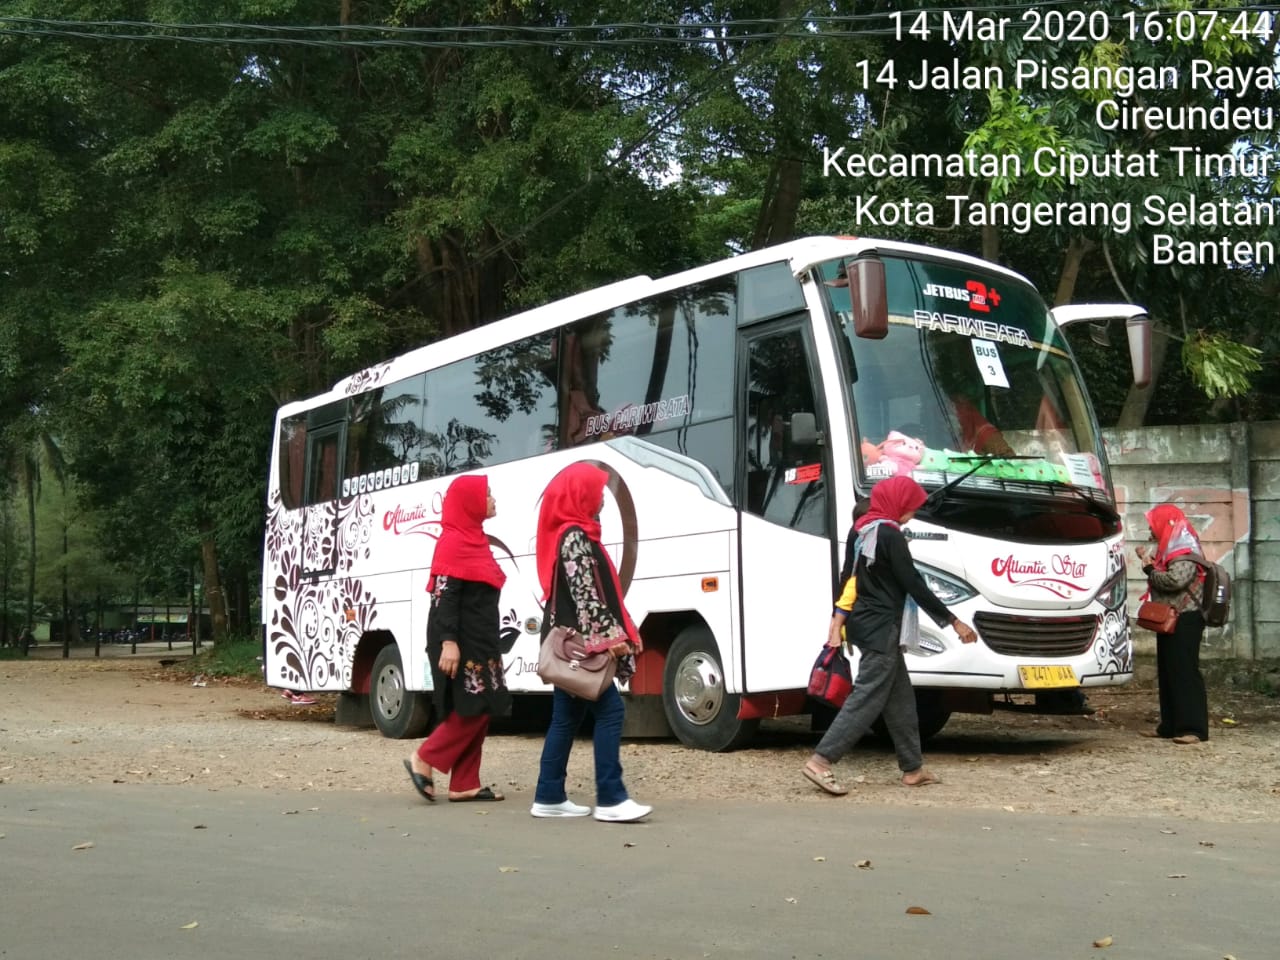 Daftar Harga Sewa Bus Pariwisata Tangerang